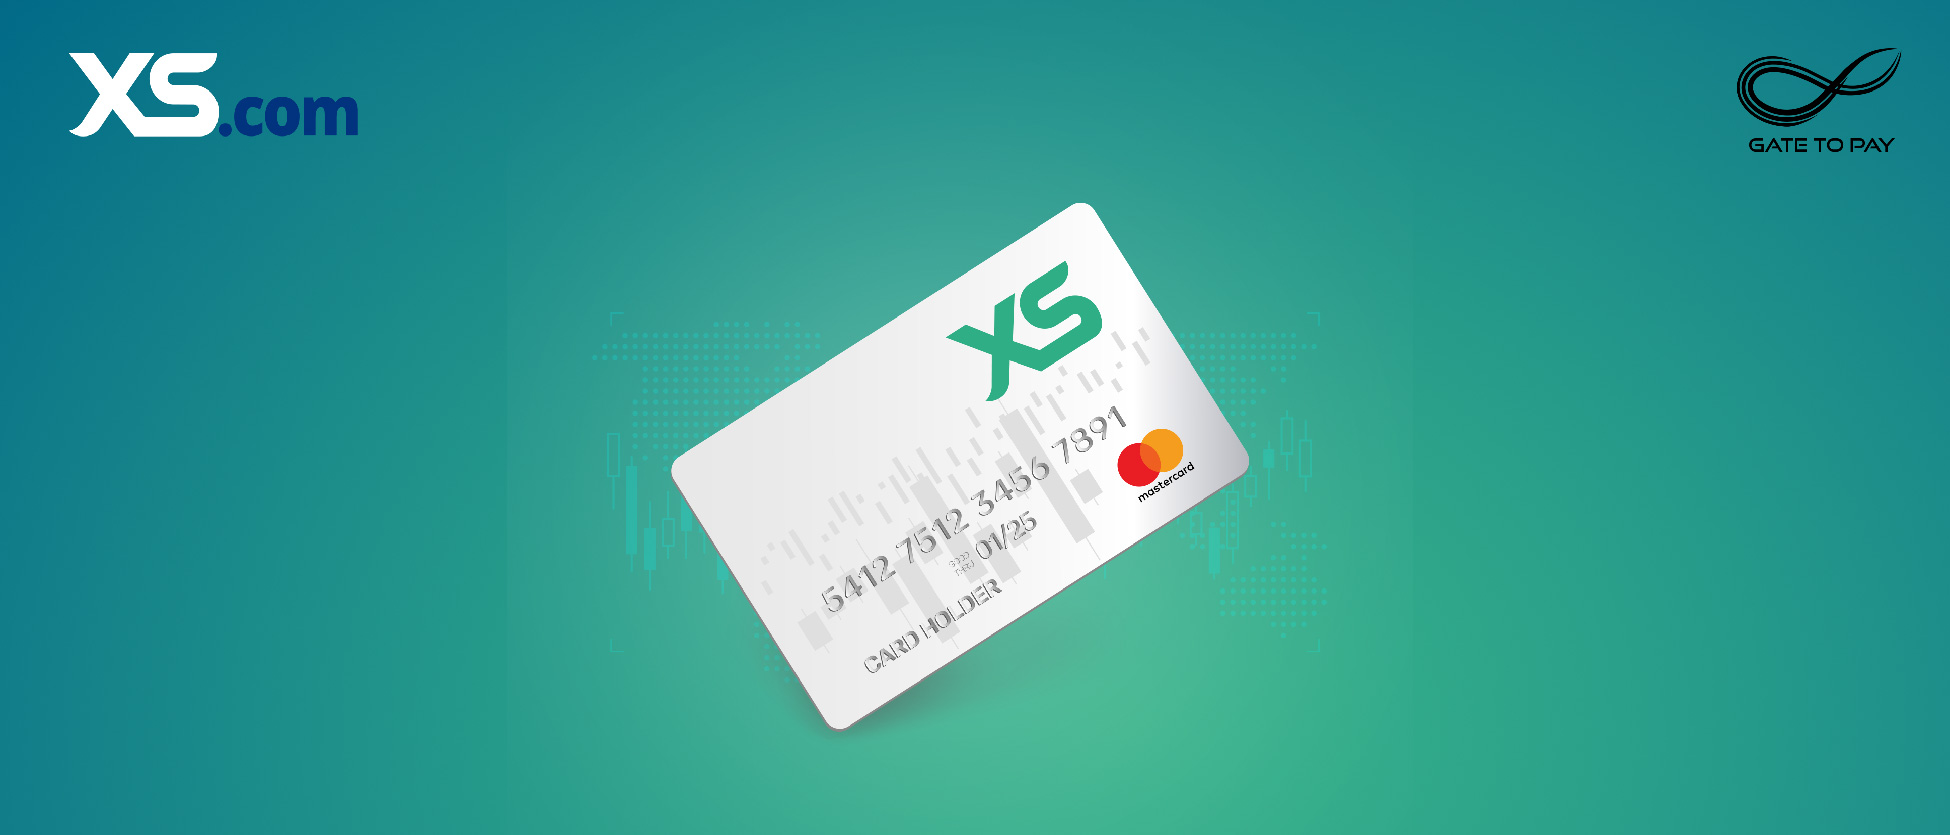 XS.com apresenta o XS Prepaid Mastercard integrado ao aplicativo móvel “XS Cards”